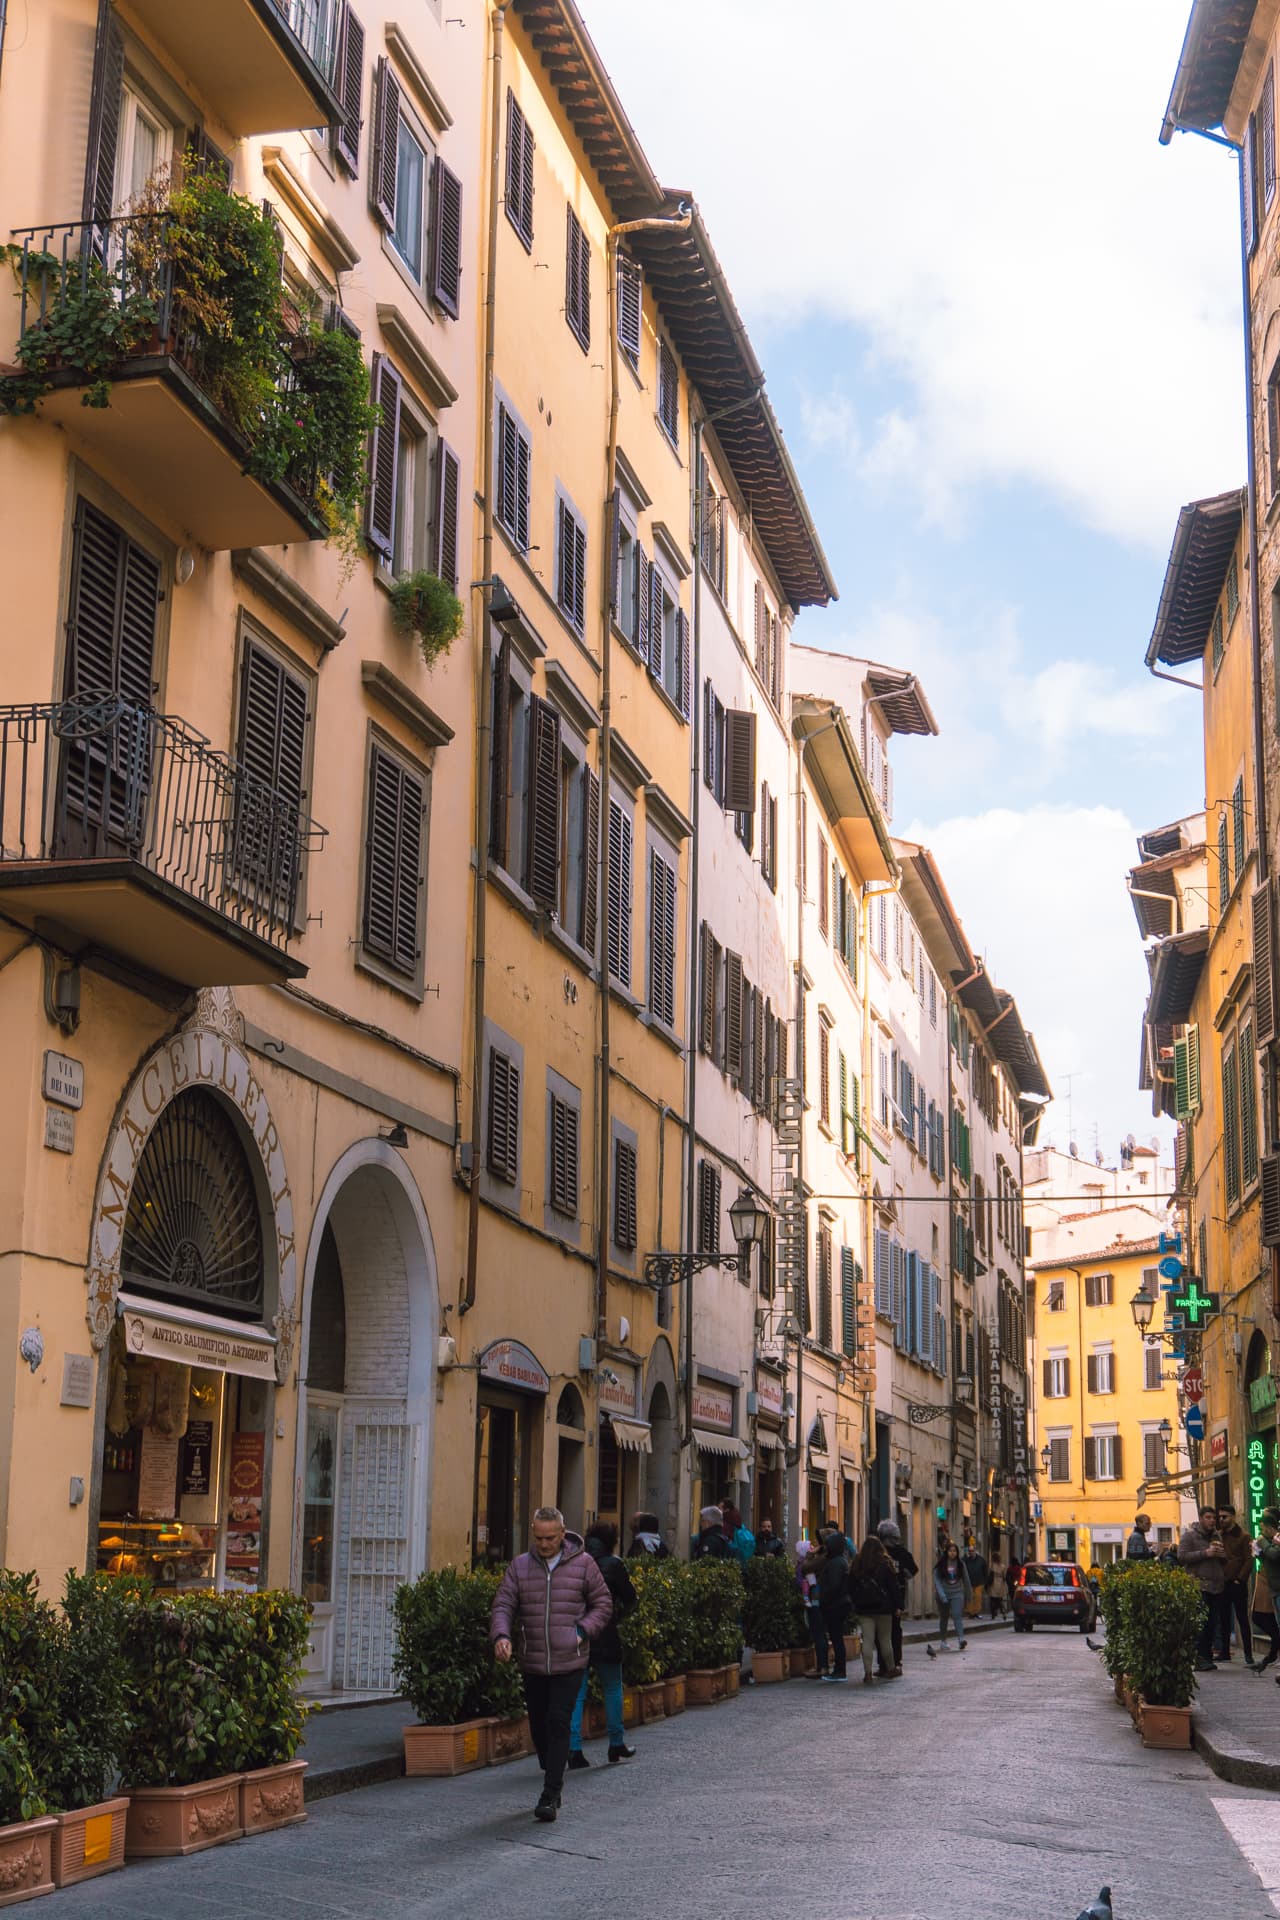 Ulice we Florencji | Zwiedzanie Florencji. Informacje praktyczne